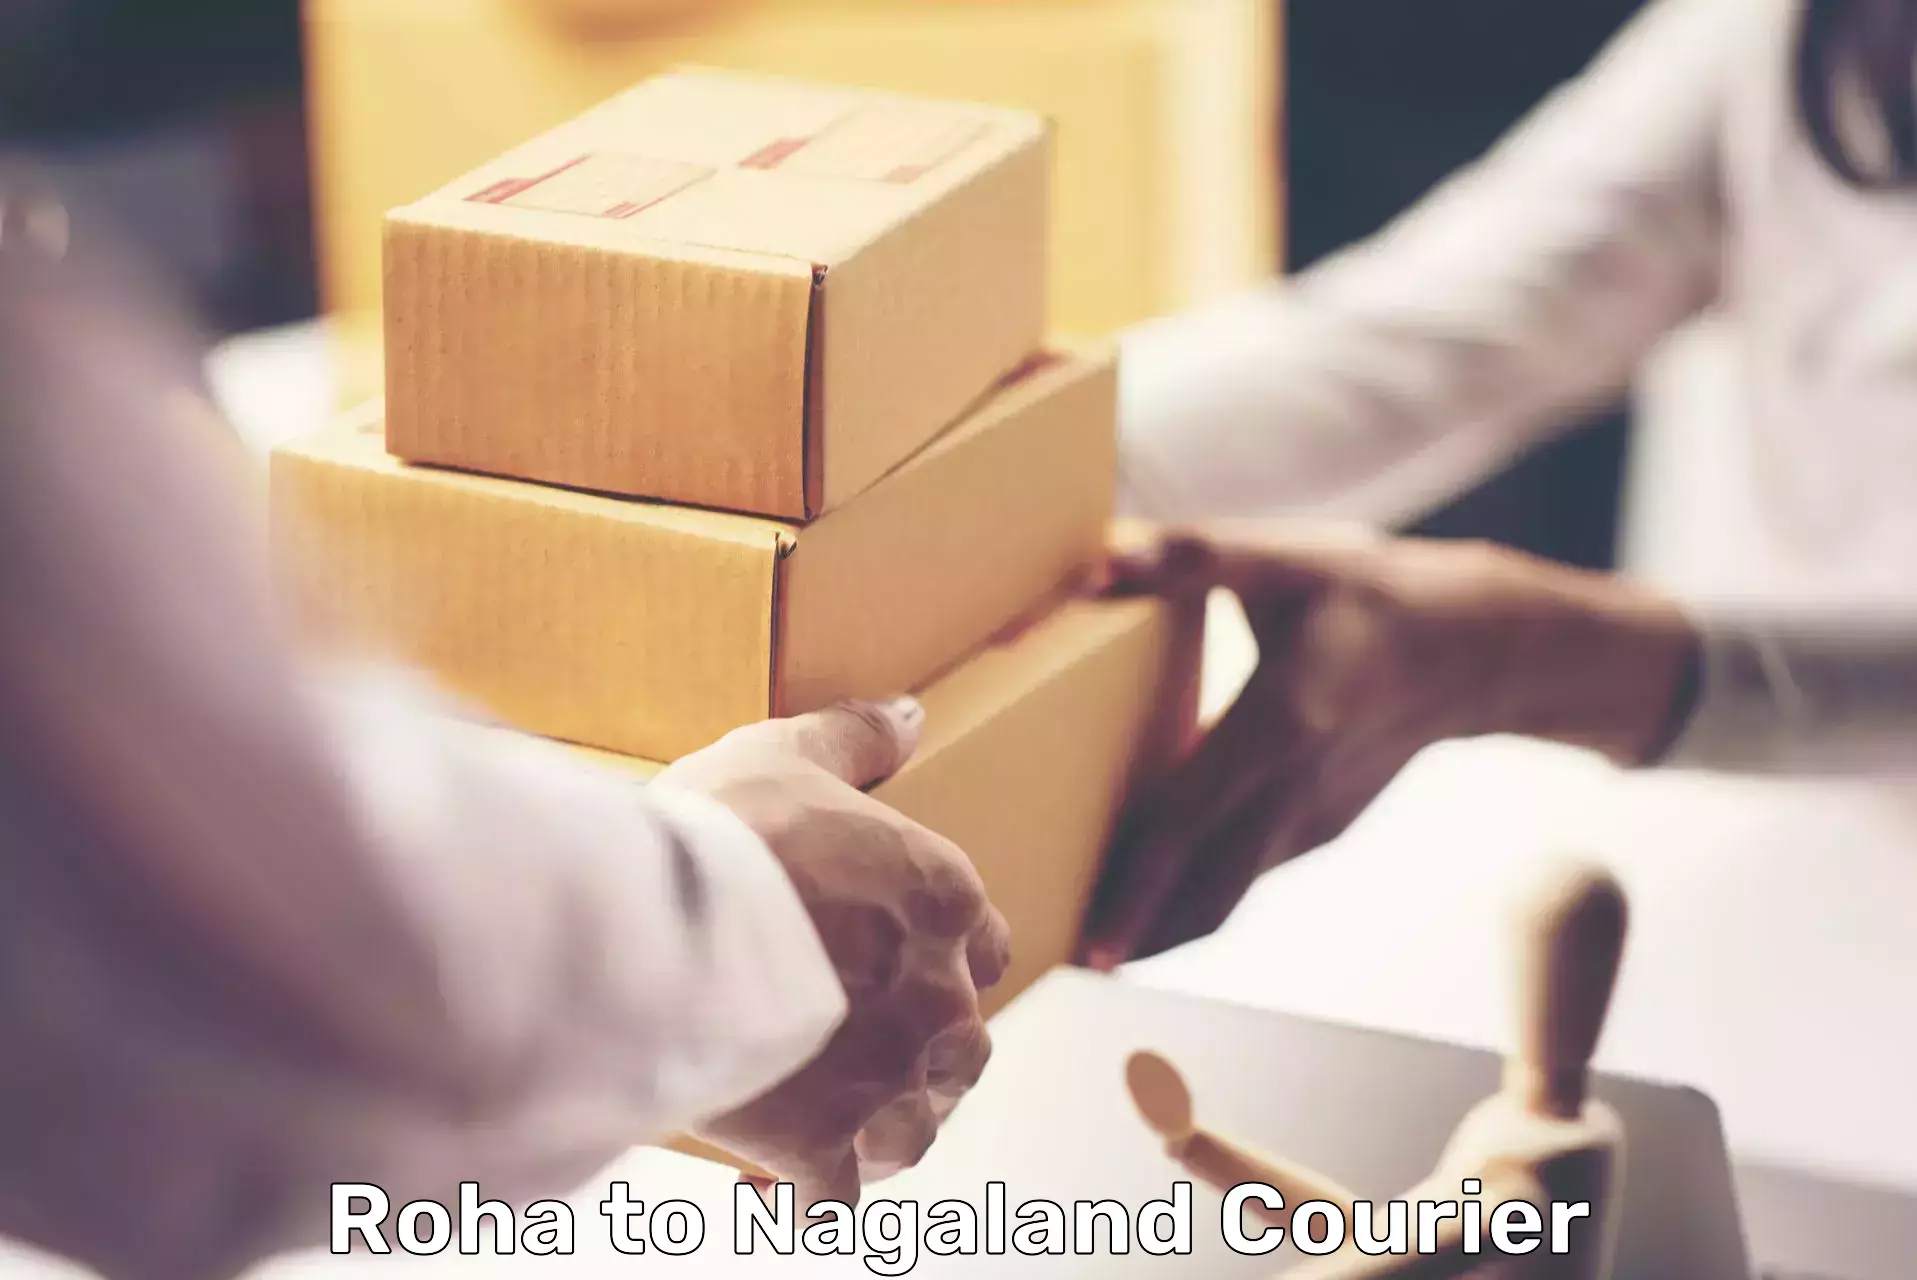 Global courier networks Roha to Wokha